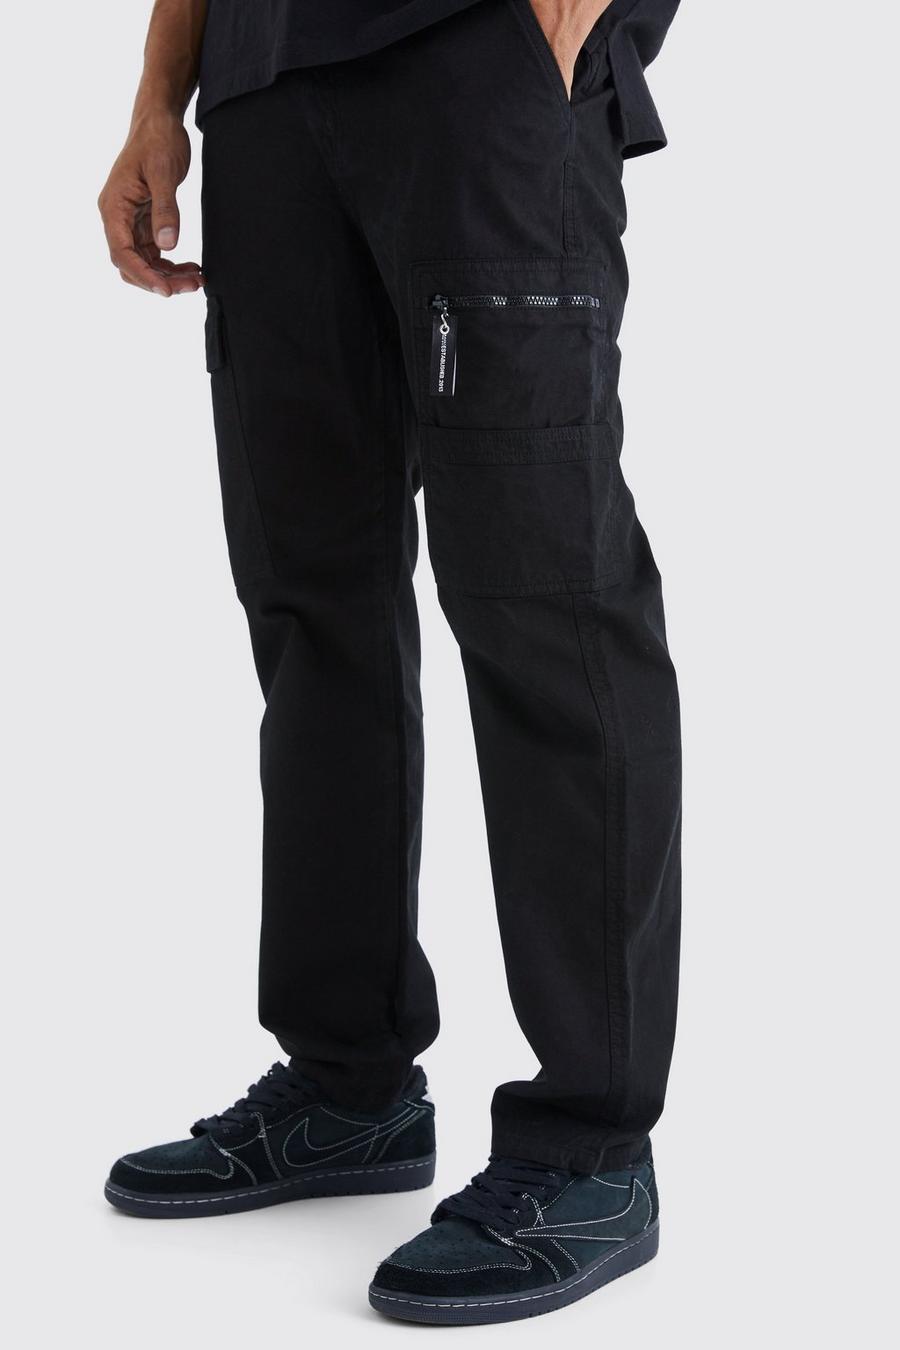 Black Straight Leg Cargo Trouser With Branded Zip Puller